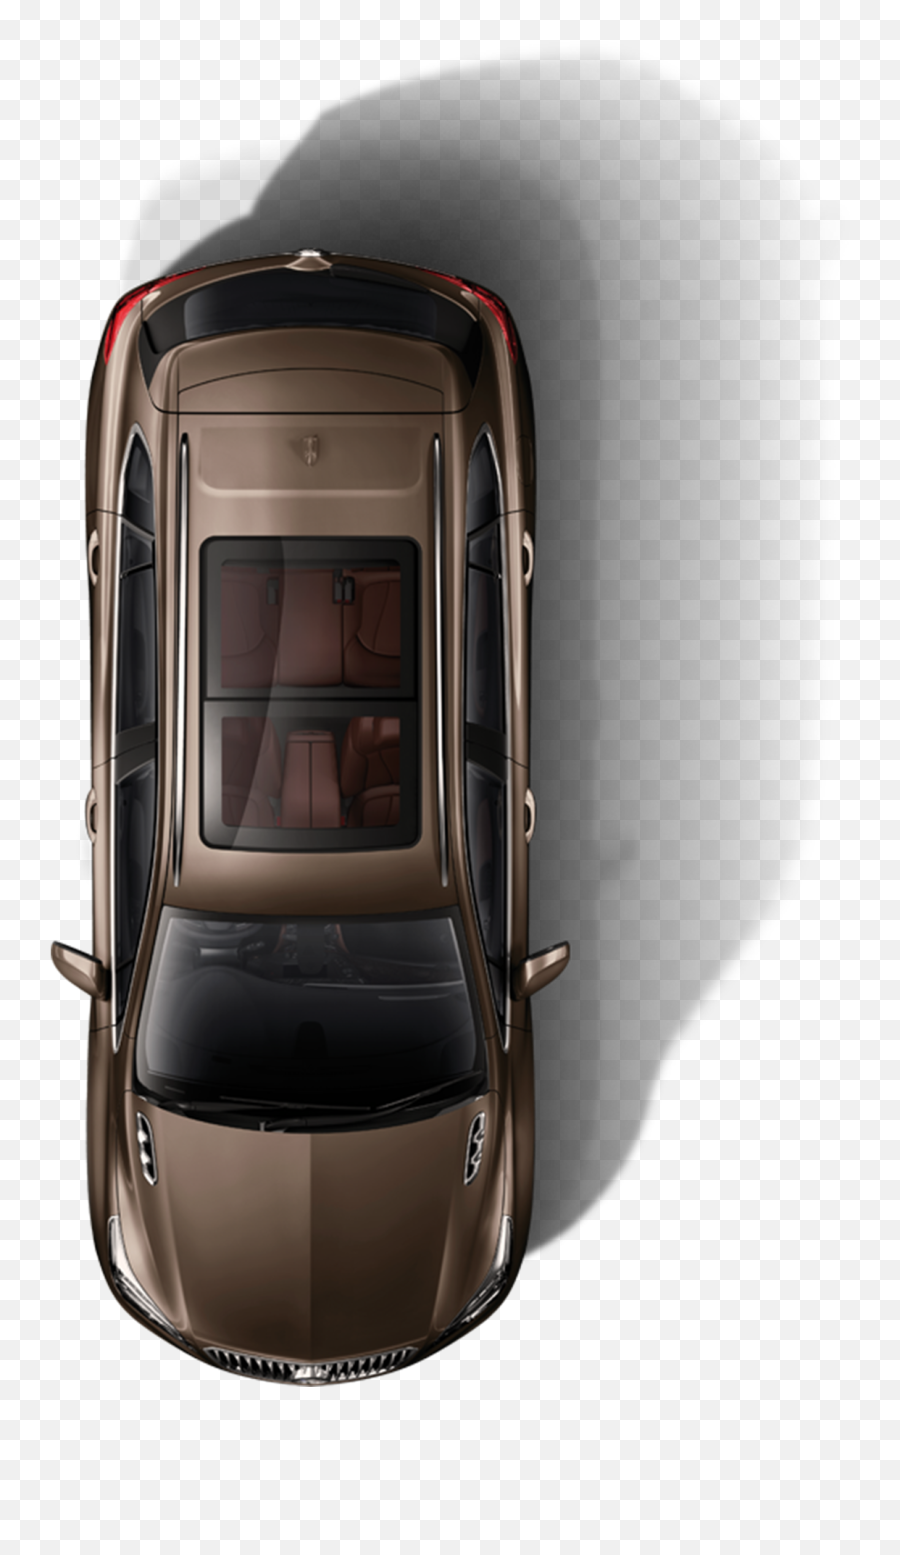 Car Top View Png Hd Car Top View Png Image Free Download - Car Plan View Transparent Emoji,Car Mask Emoji